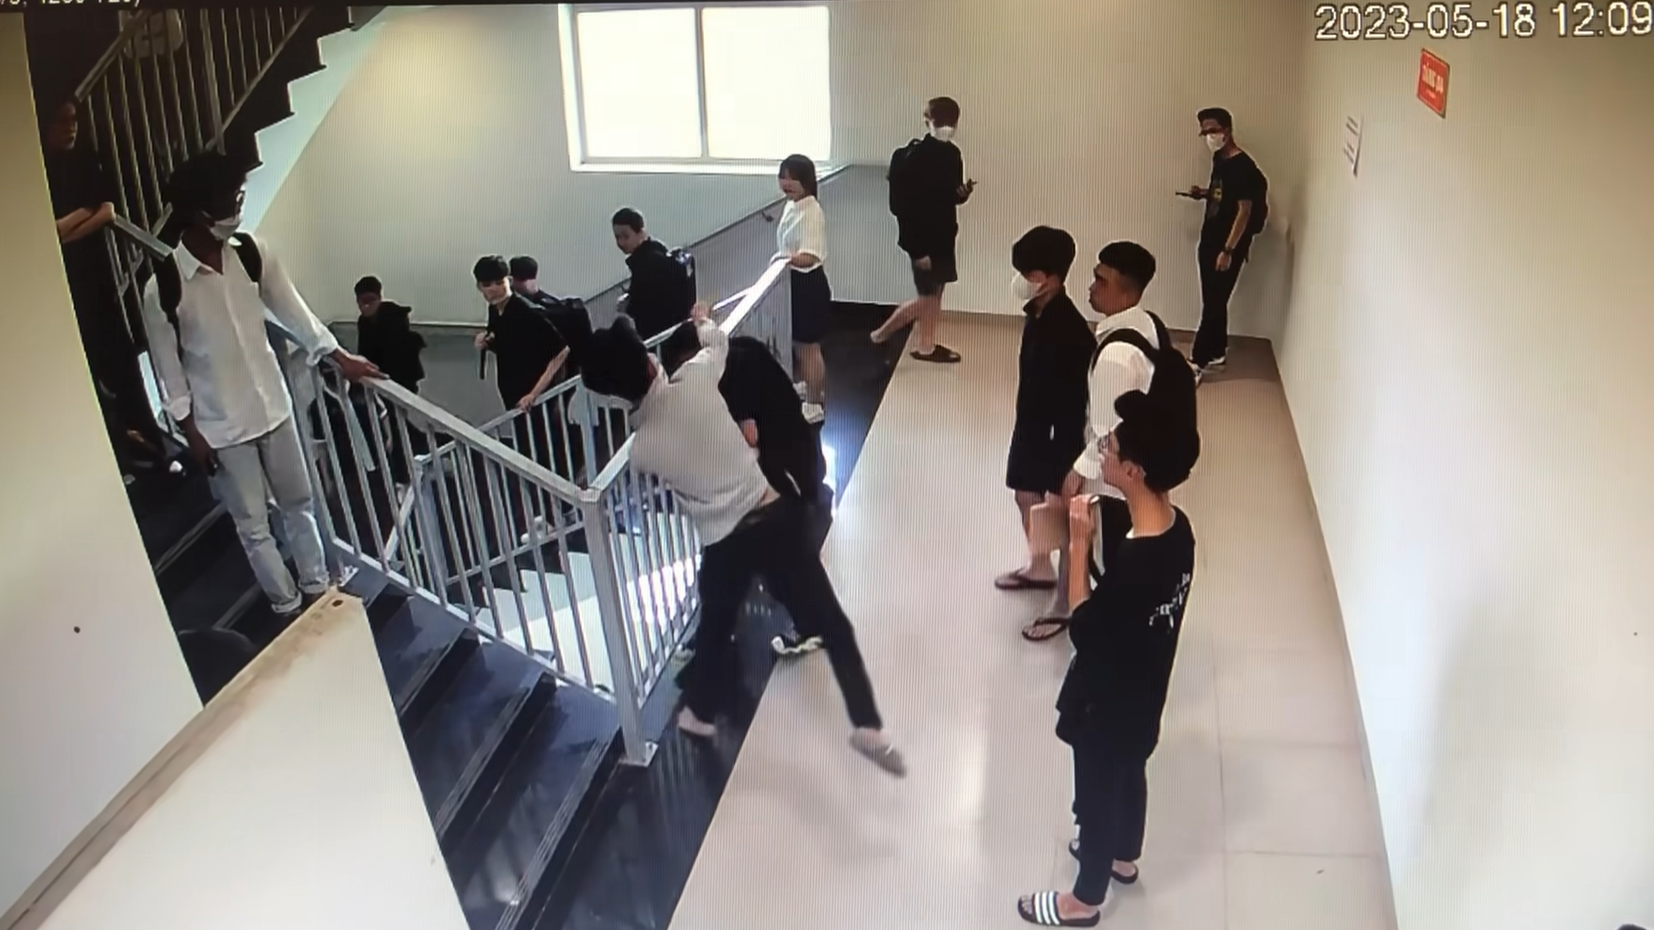 Bên trong công trình trường Đại học FPT Campus Hoà Lạc - Nơi xảy ra bạo lực học đường có gì đặc biệt?